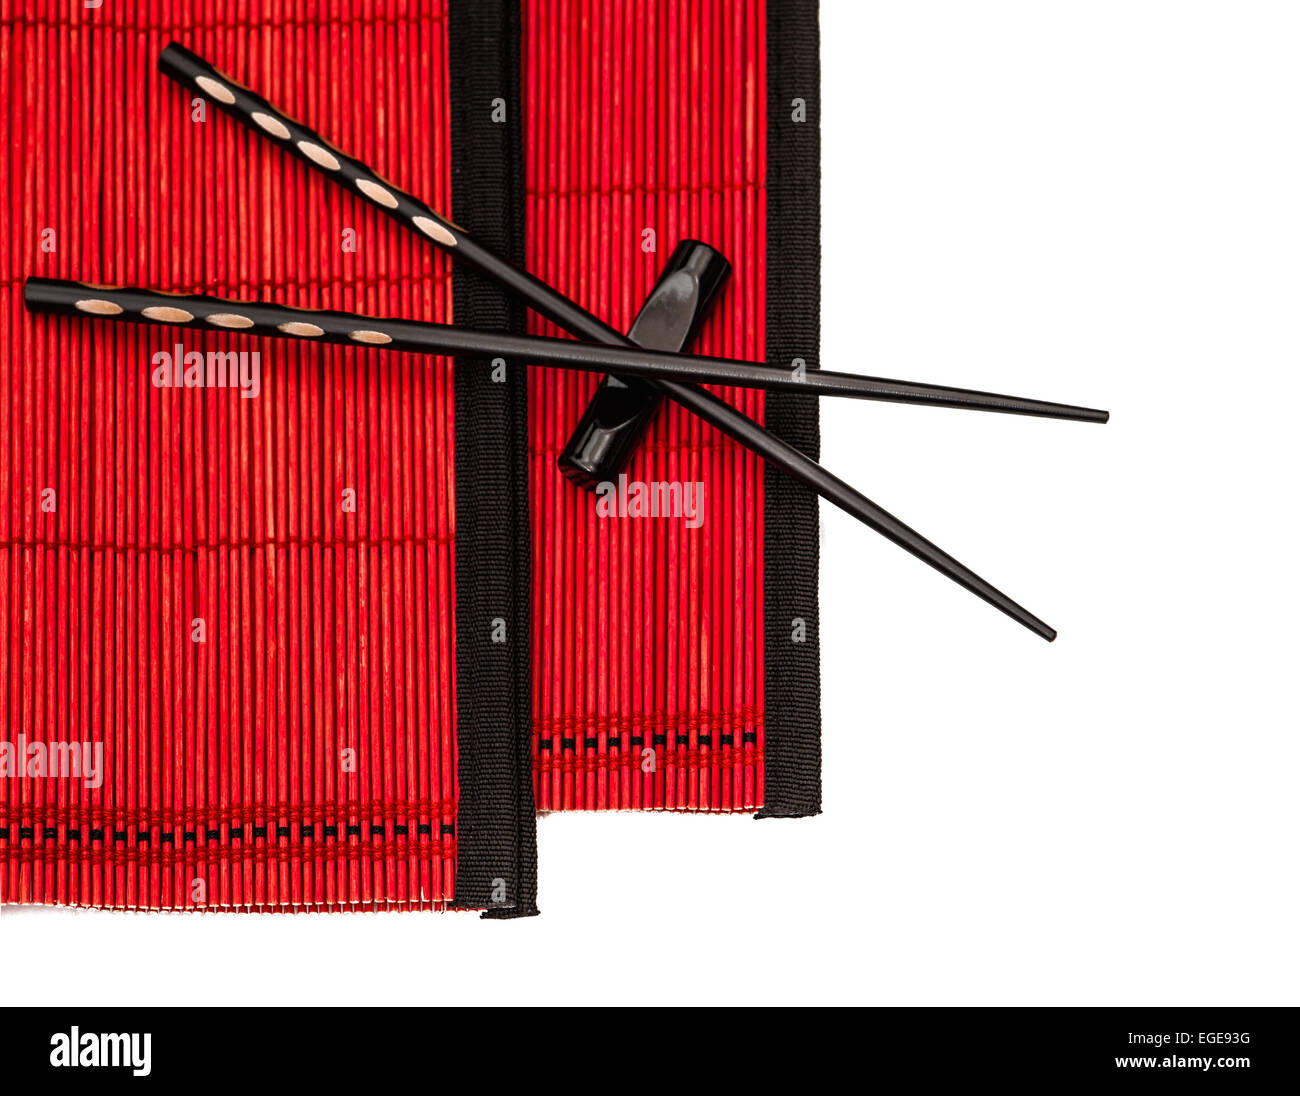 Negro sobre rojo palillos chinos estera de bambú. Tabla de estilo asiático place setting Foto de stock